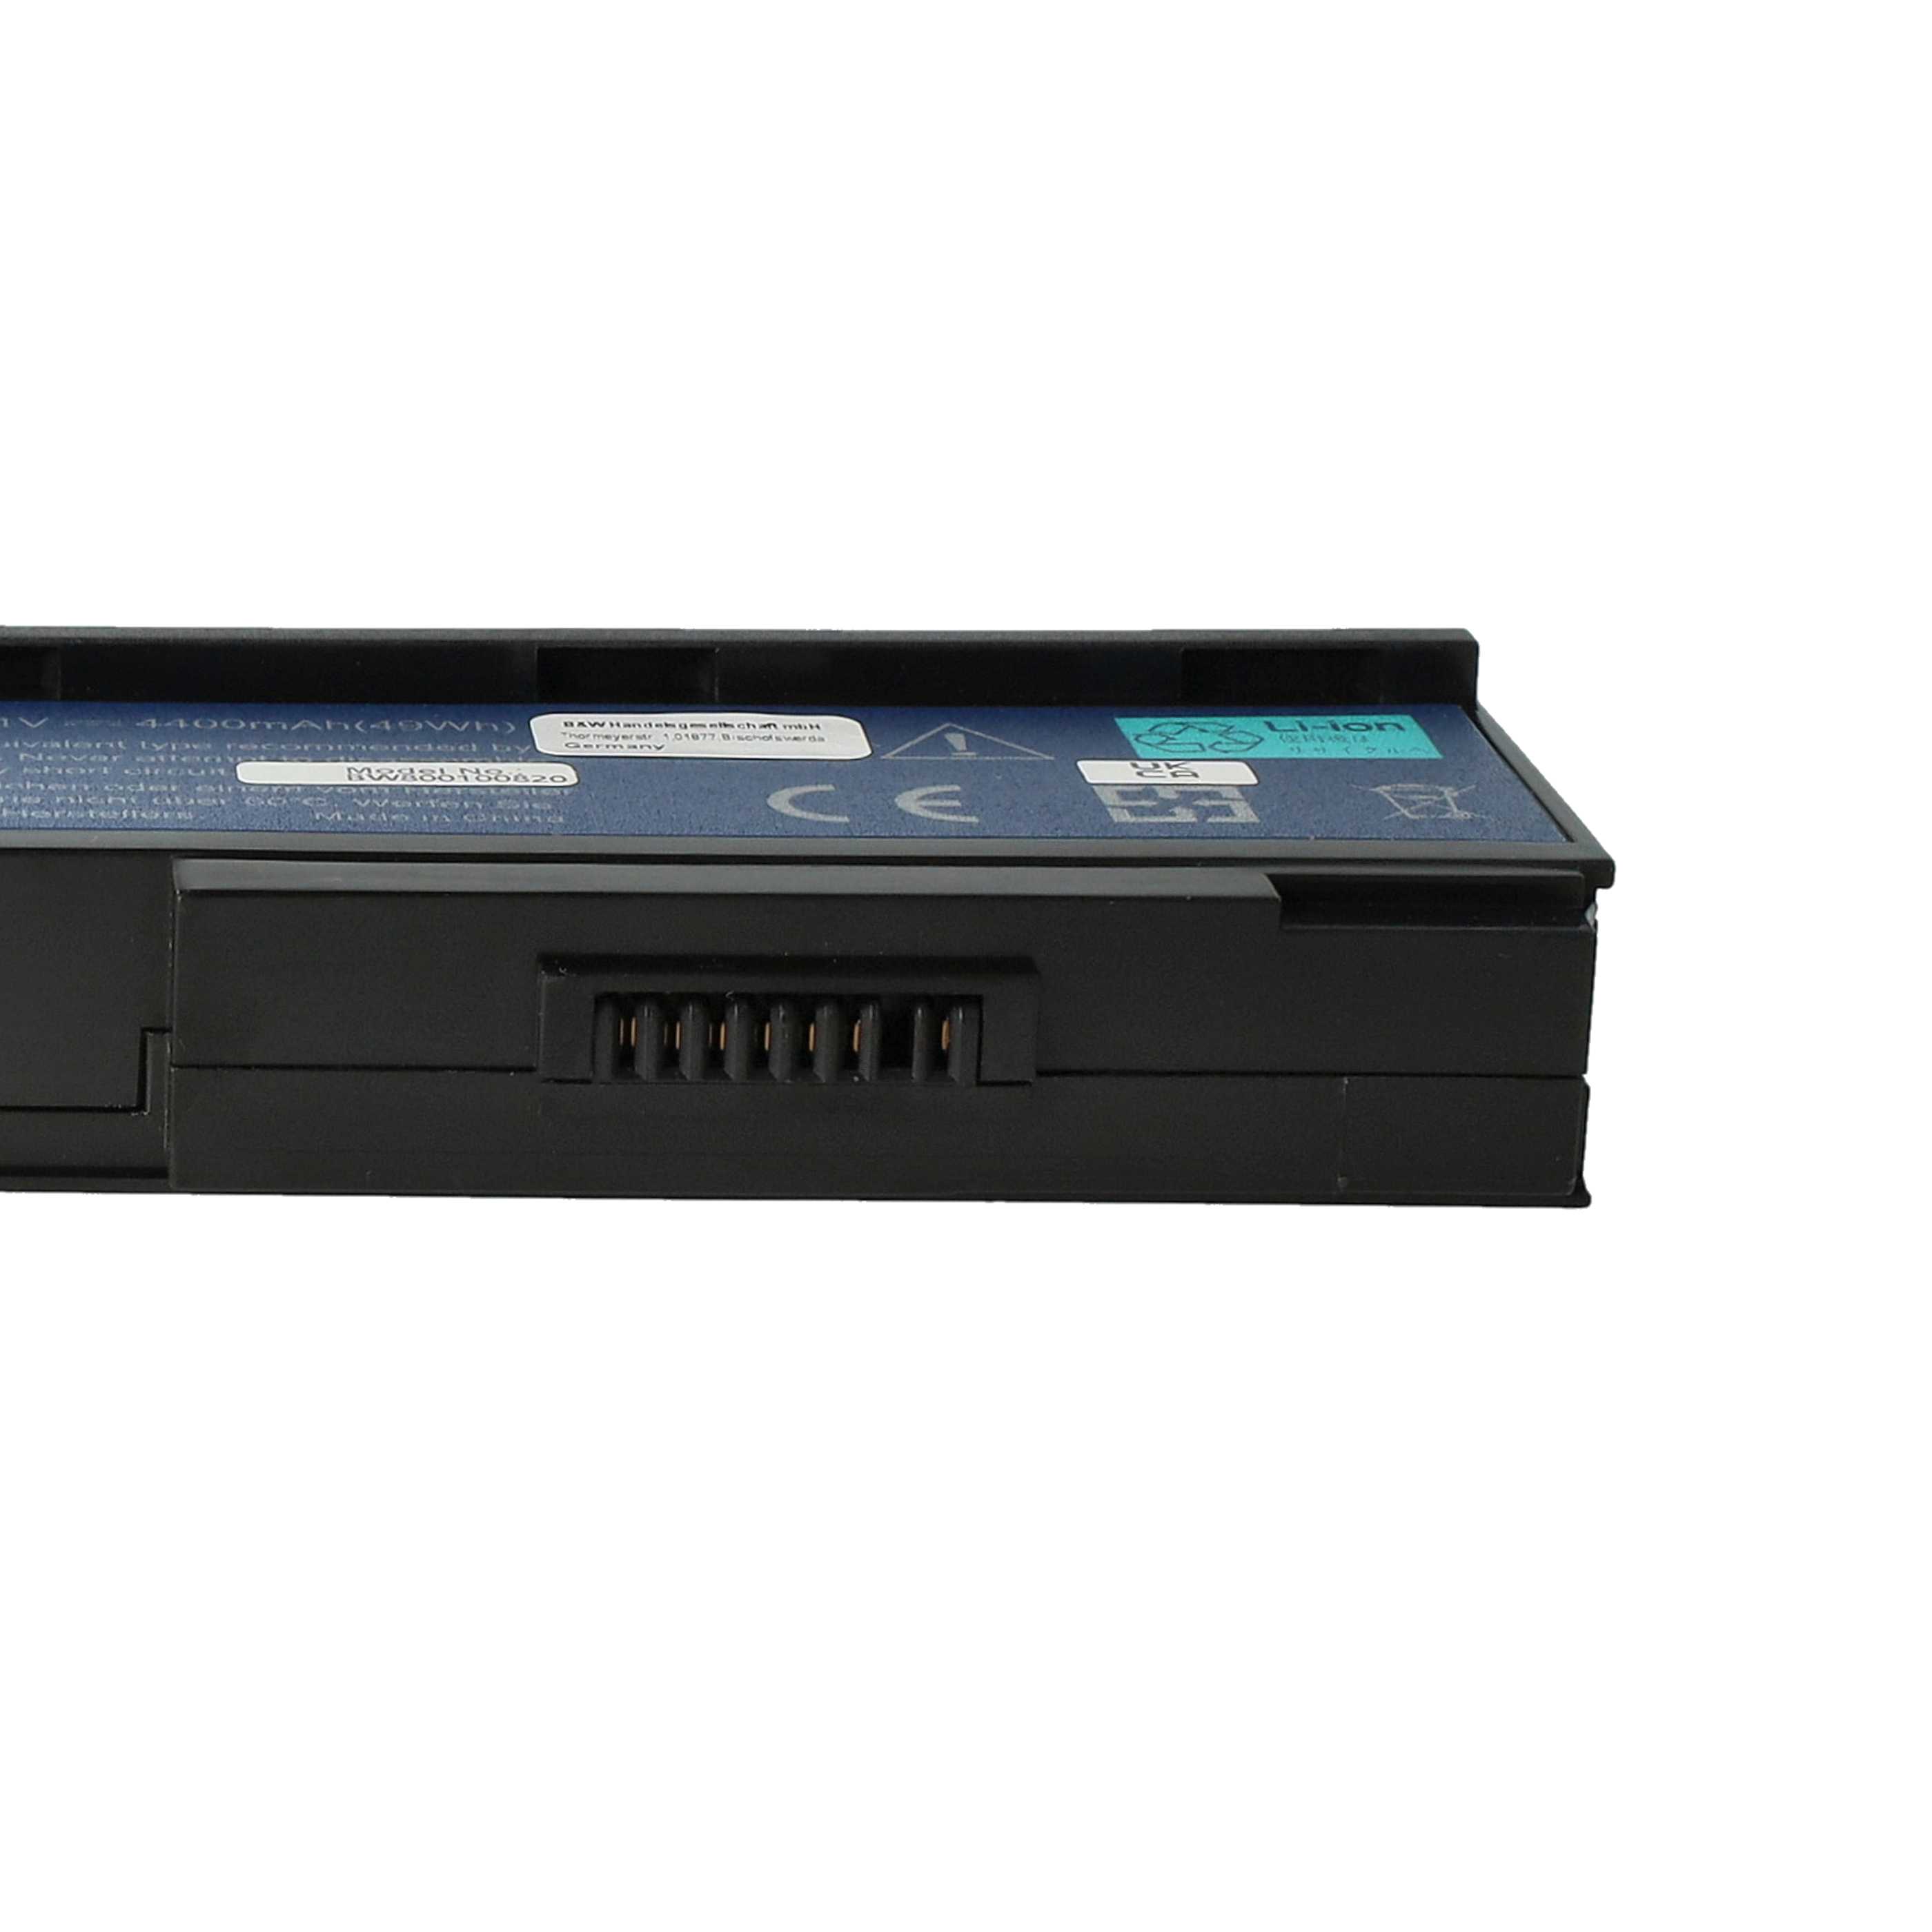 Batterie remplace Acer 934T2210F, BT.00603.012 pour ordinateur portable - 4400mAh 11,1V Li-ion, noir